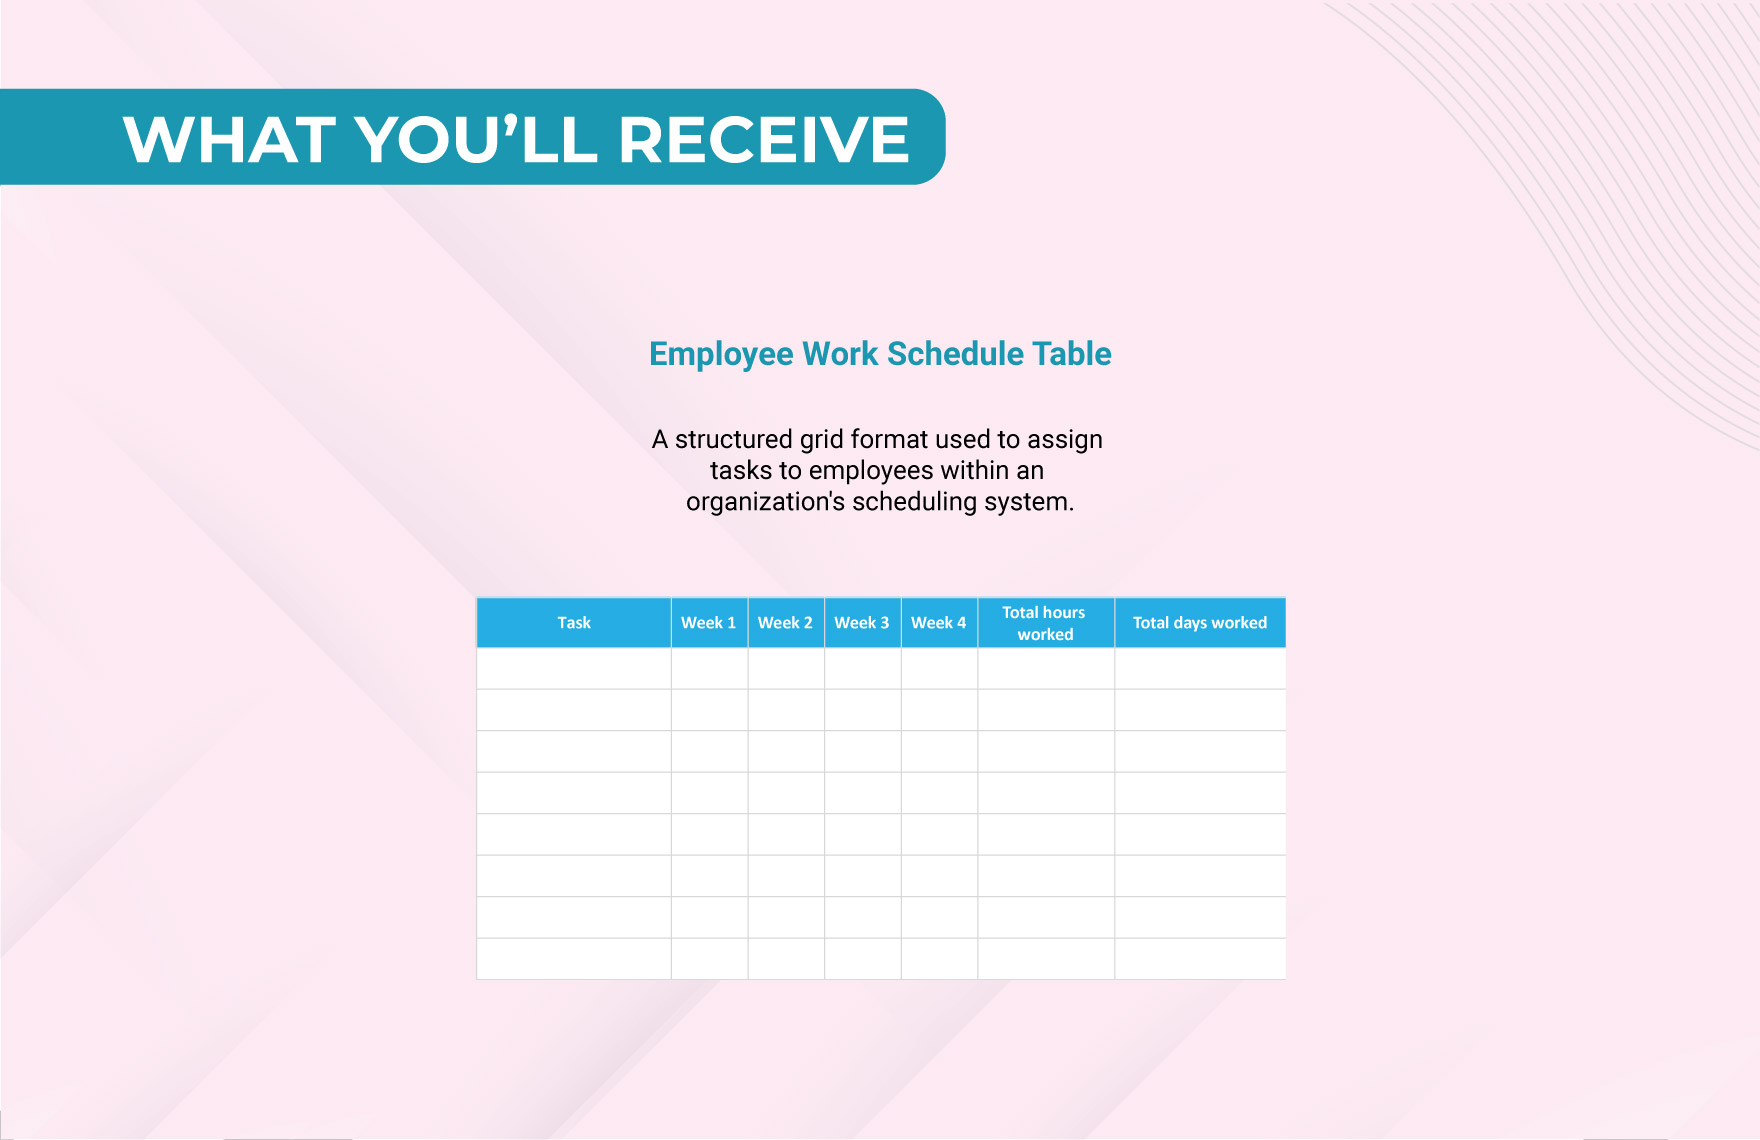 Employee Work Schedule Template